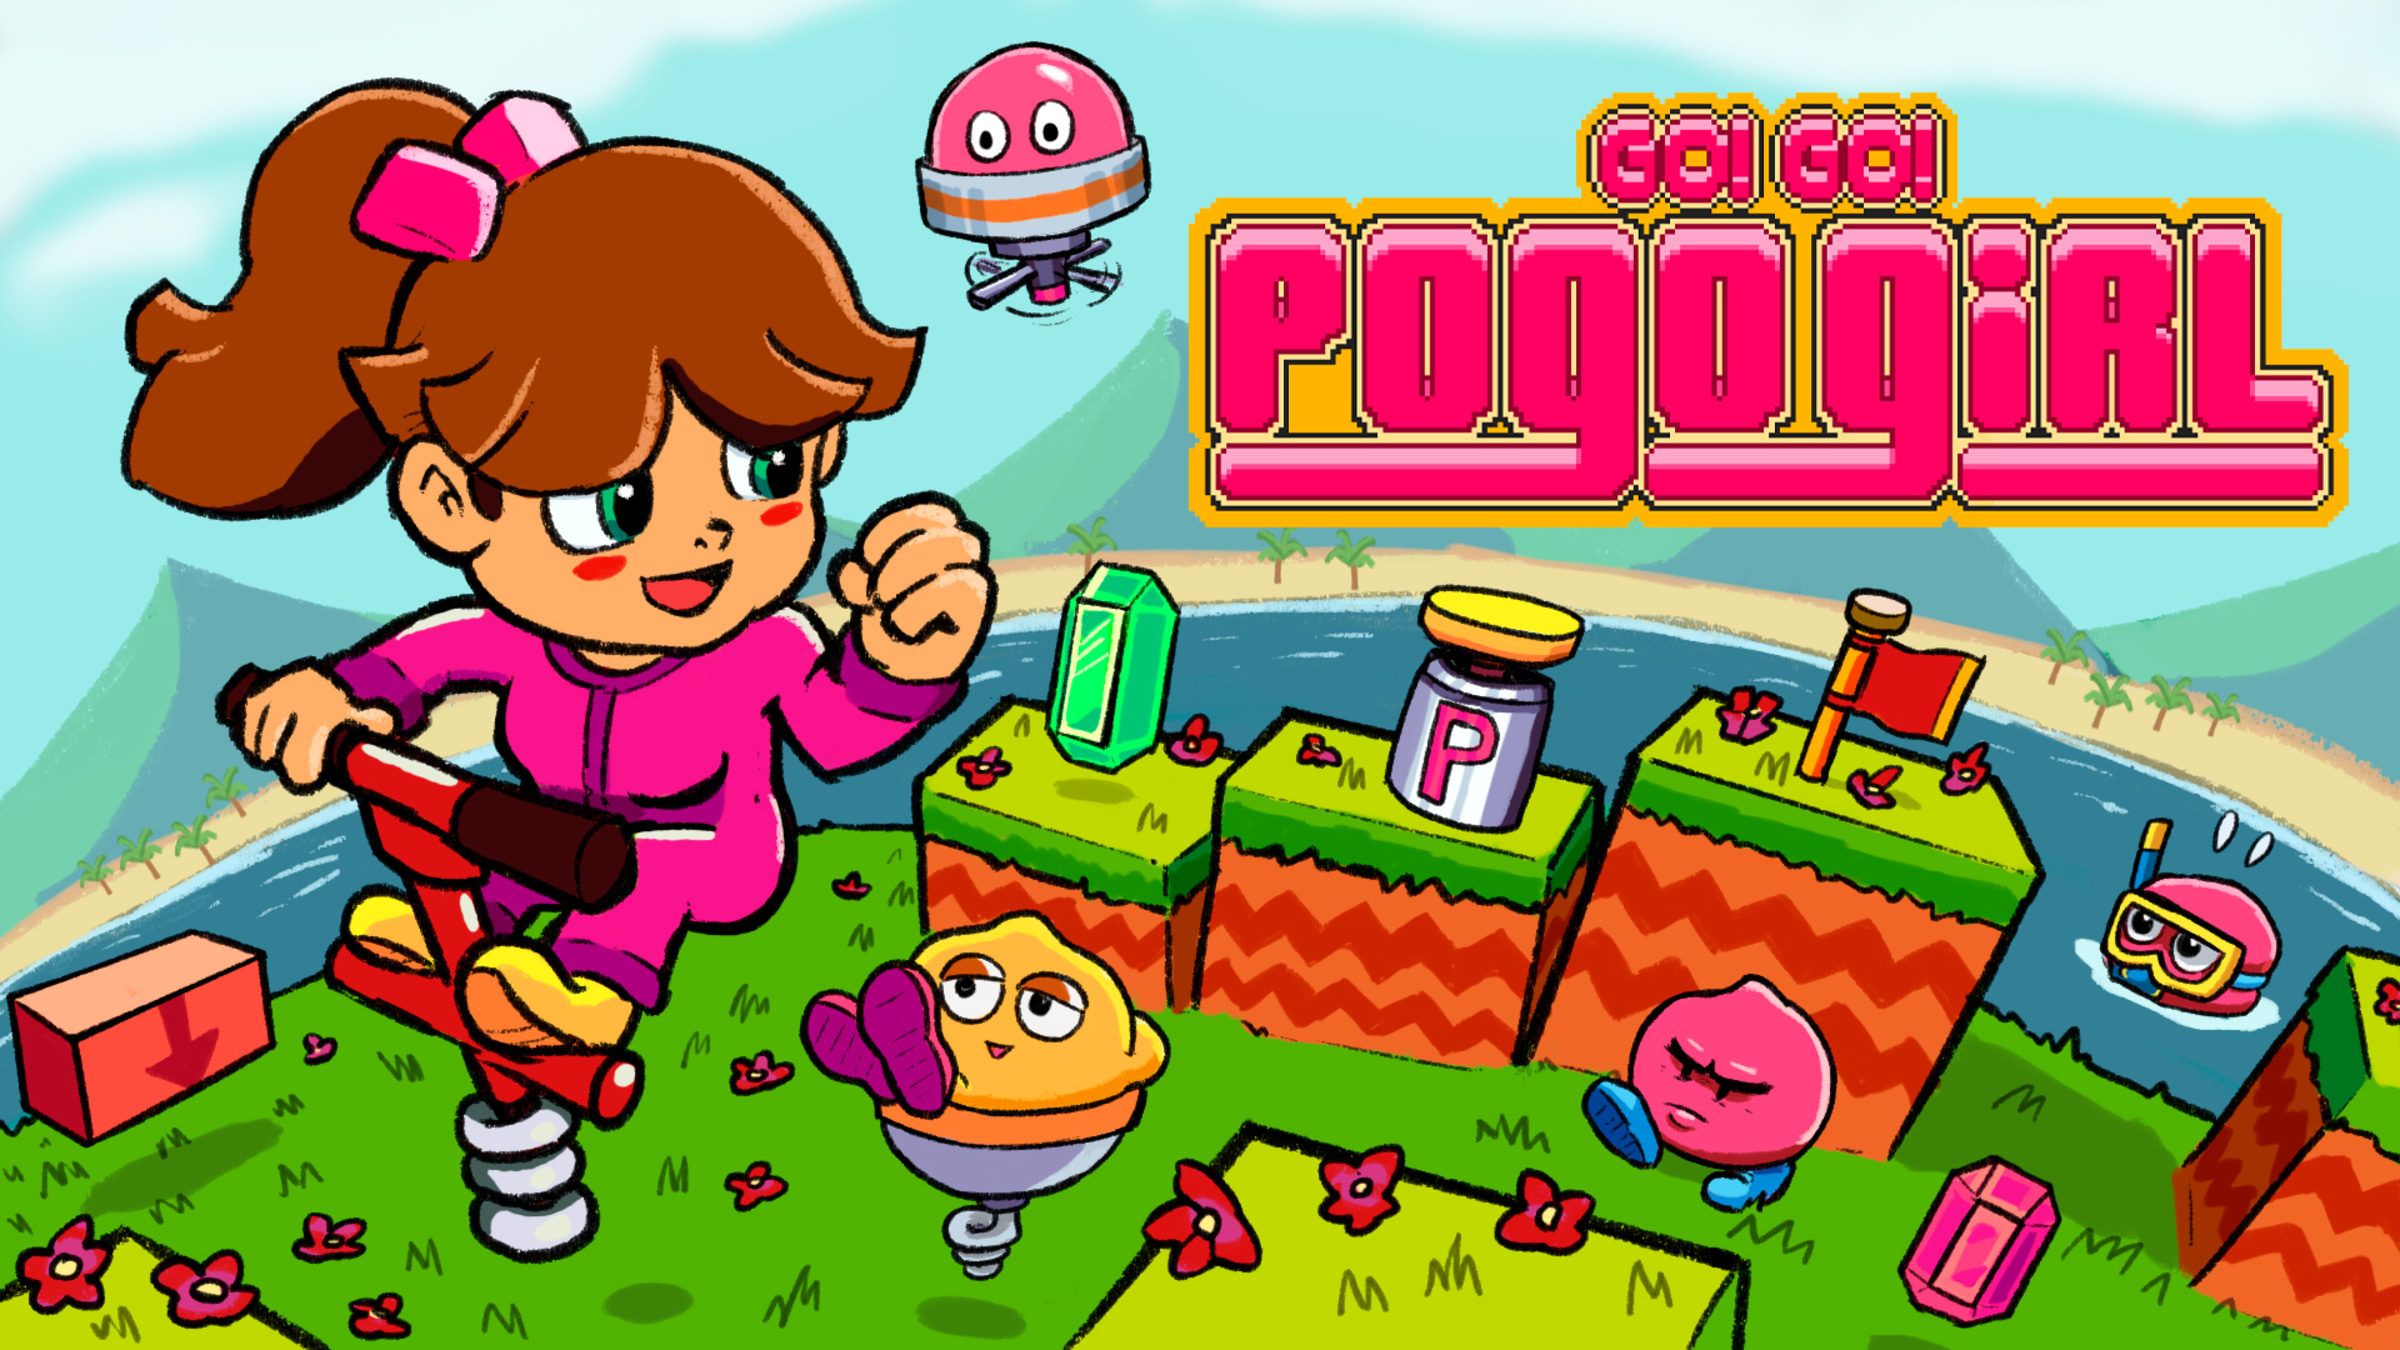 Go! Go! PogoGirl for Nintendo Switch - Nintendo Official Site